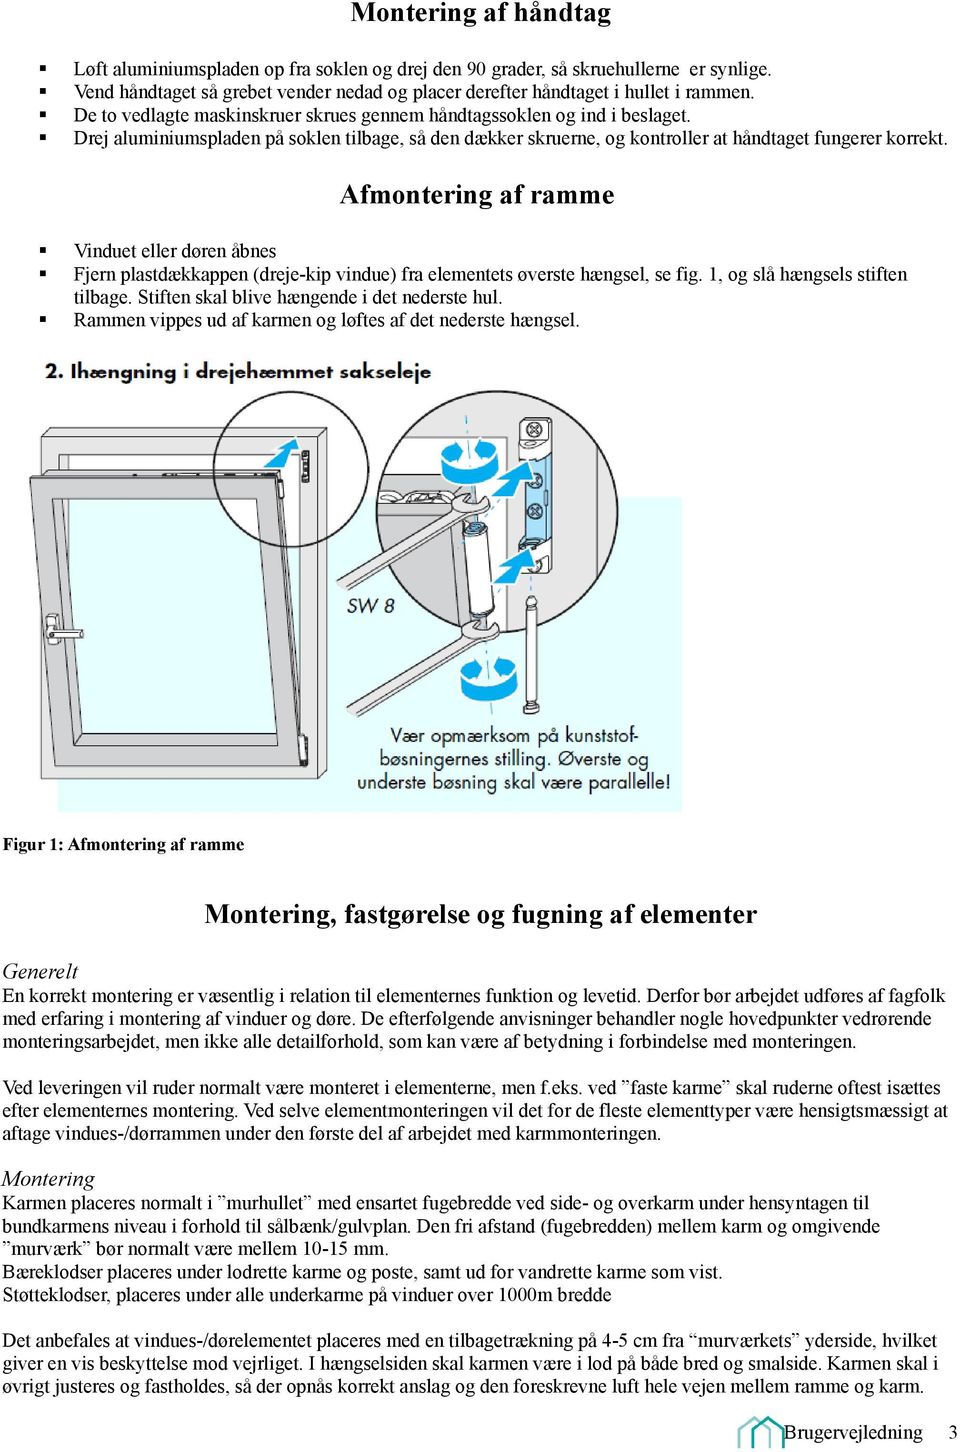 Montage & Brugervejledning - PDF Gratis download